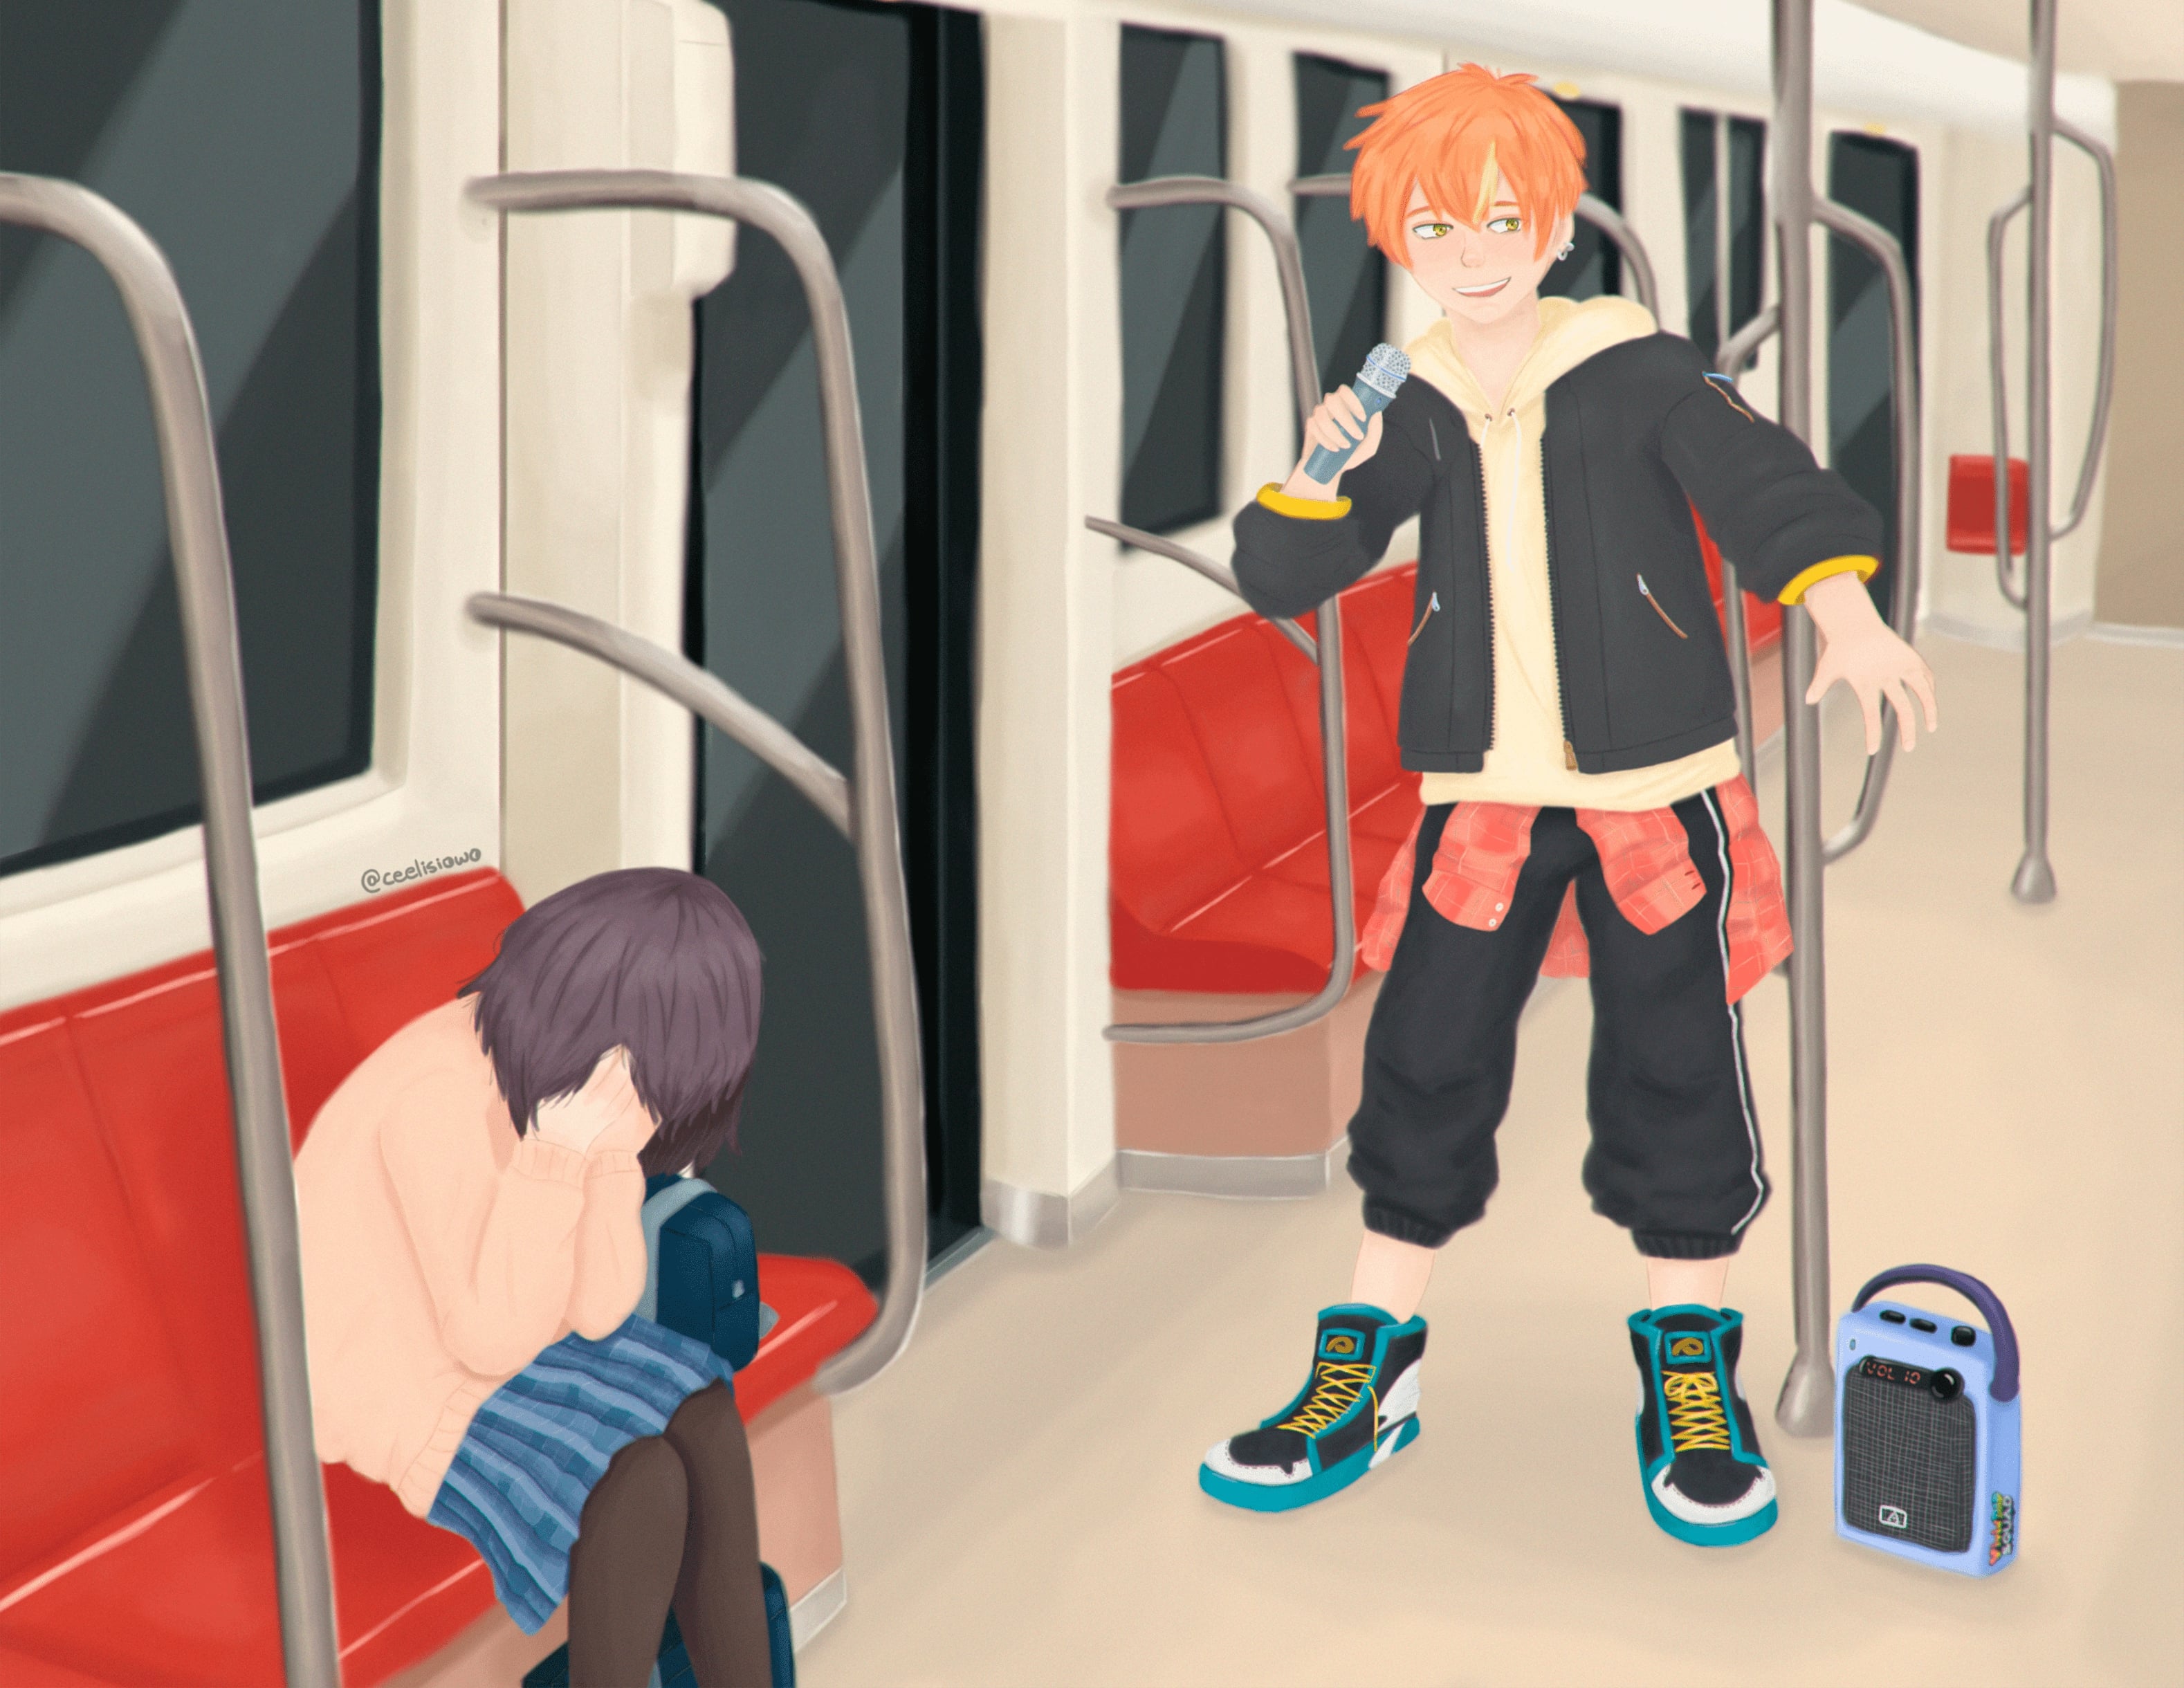 Digital drawing of Akito and Ena signing in the subway.